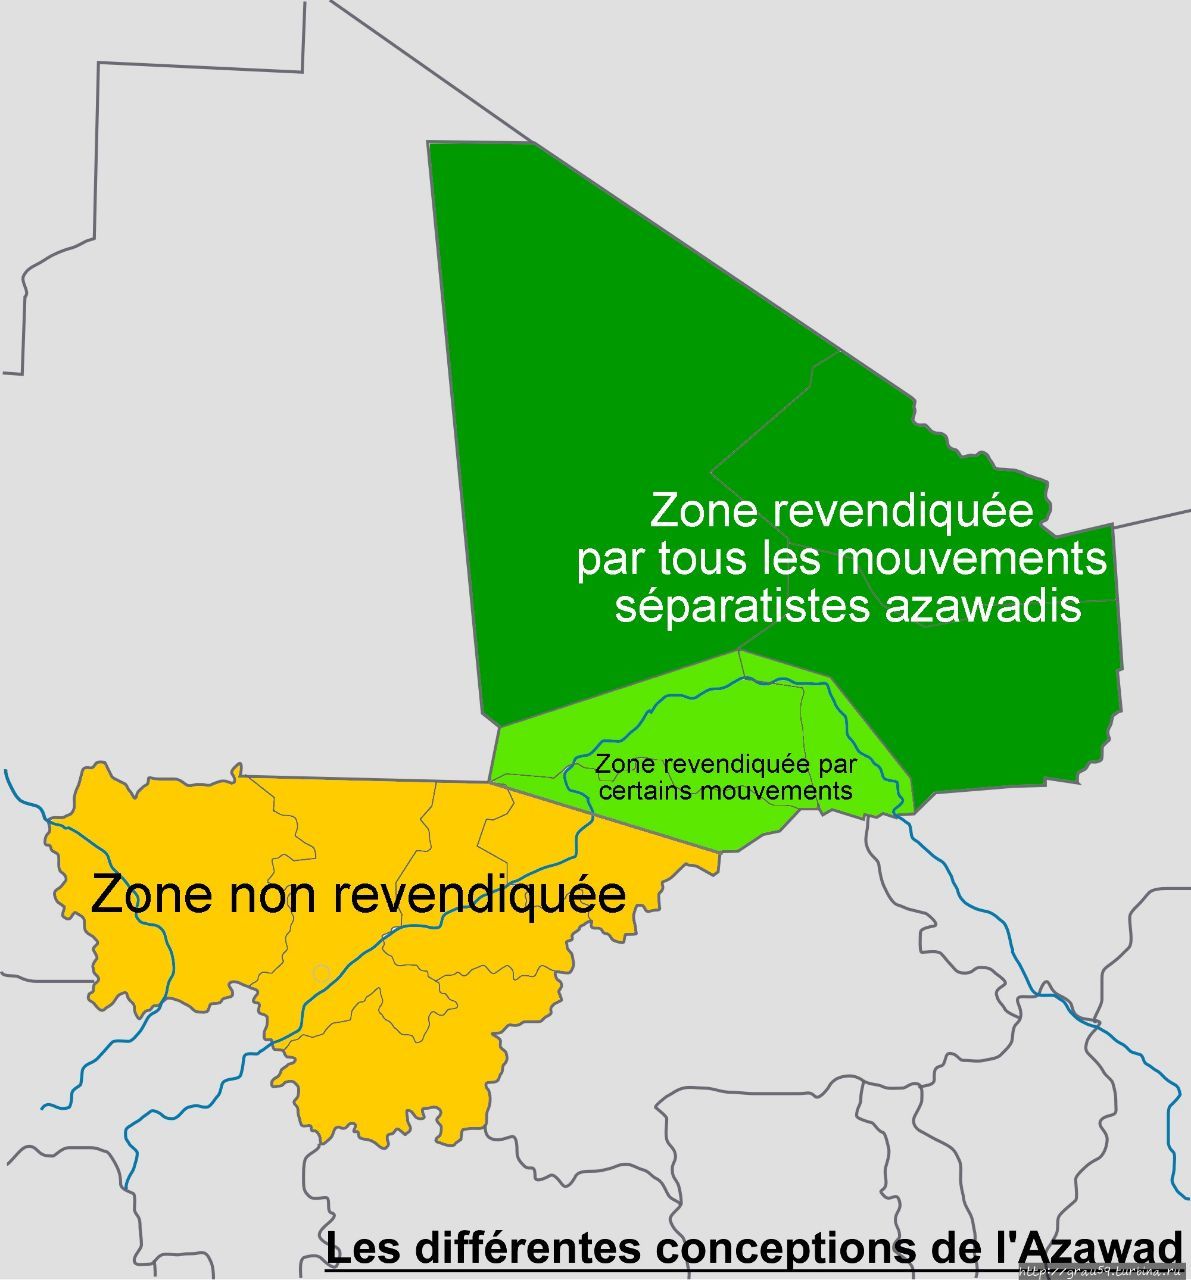 Карта территорий, контролируемых самопровозглашённым Независимым Государством Азавад (тёмно-зелёная зона). Жёлтым обозначены территории, подконтрольные центральному правительству, светло-зелёным — территория обитания субсахарских народов, на которую претендует Азавад (Из Интернета) Гао, Мали